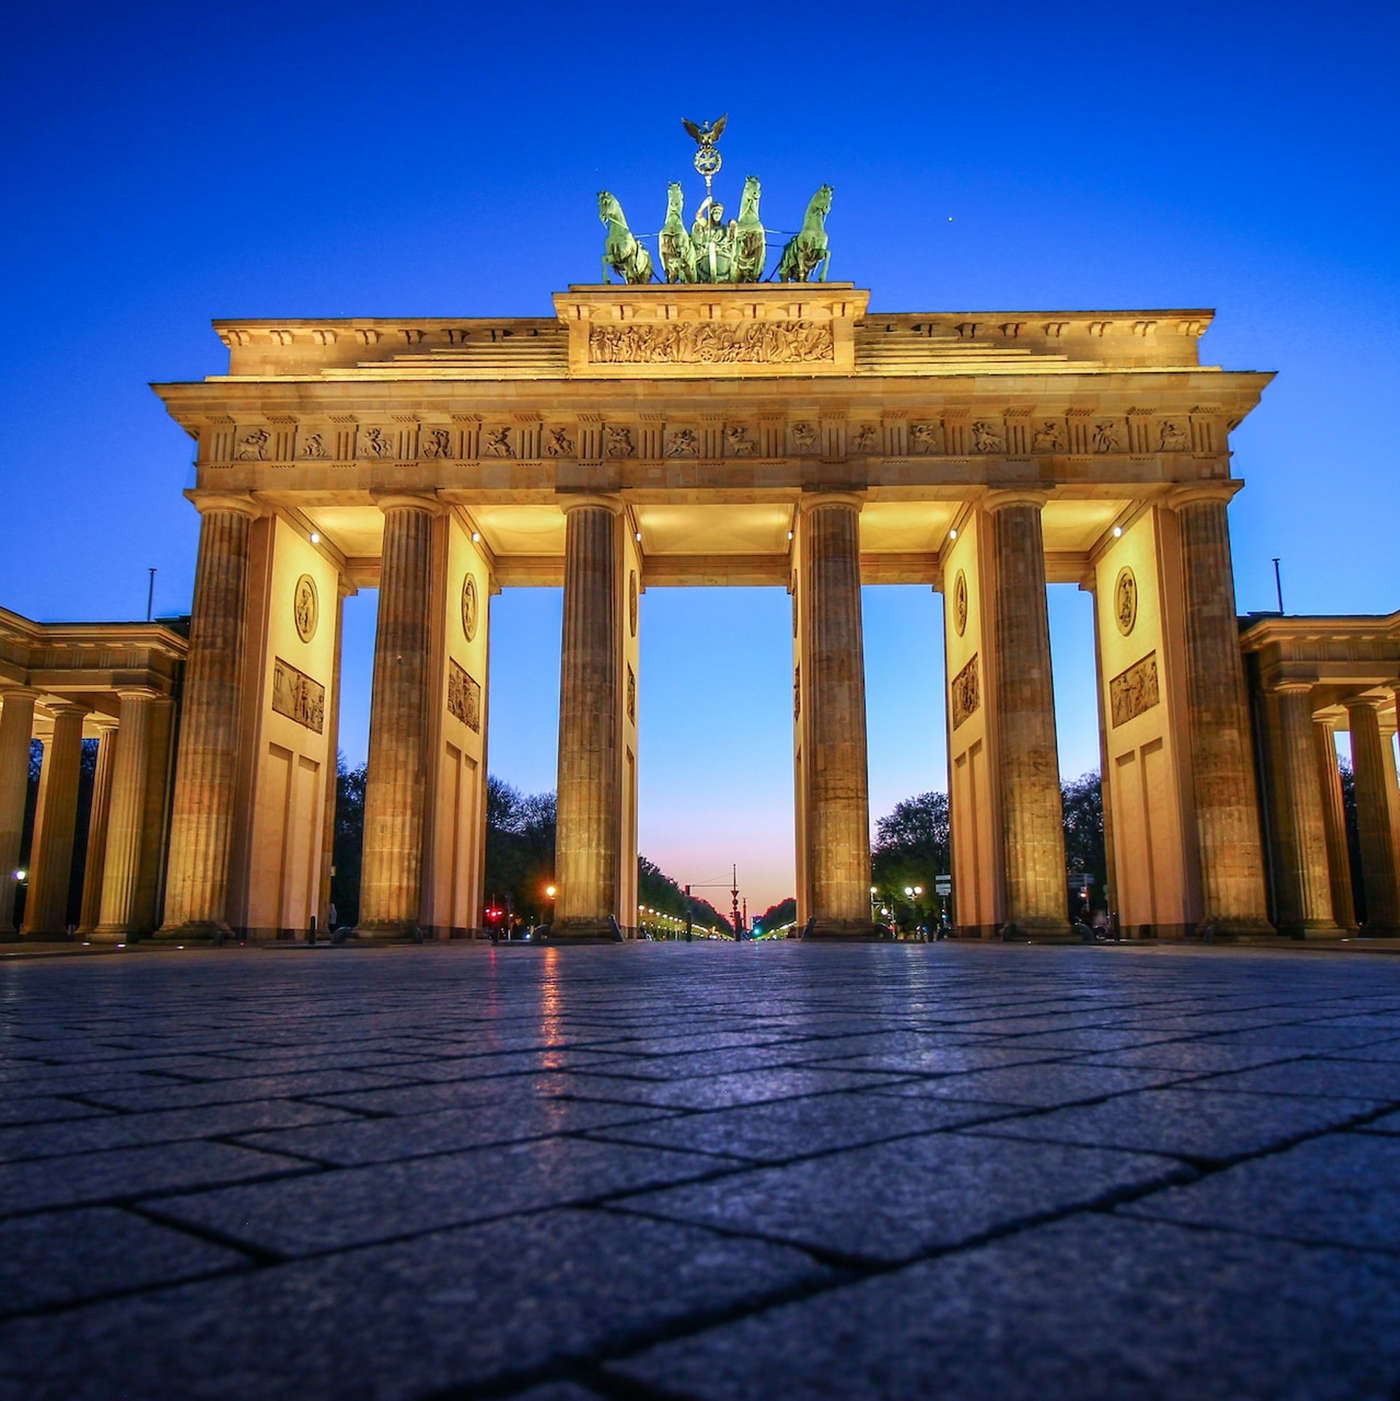 Ontdek ons
Berlijn op een hele nieuwe manier.